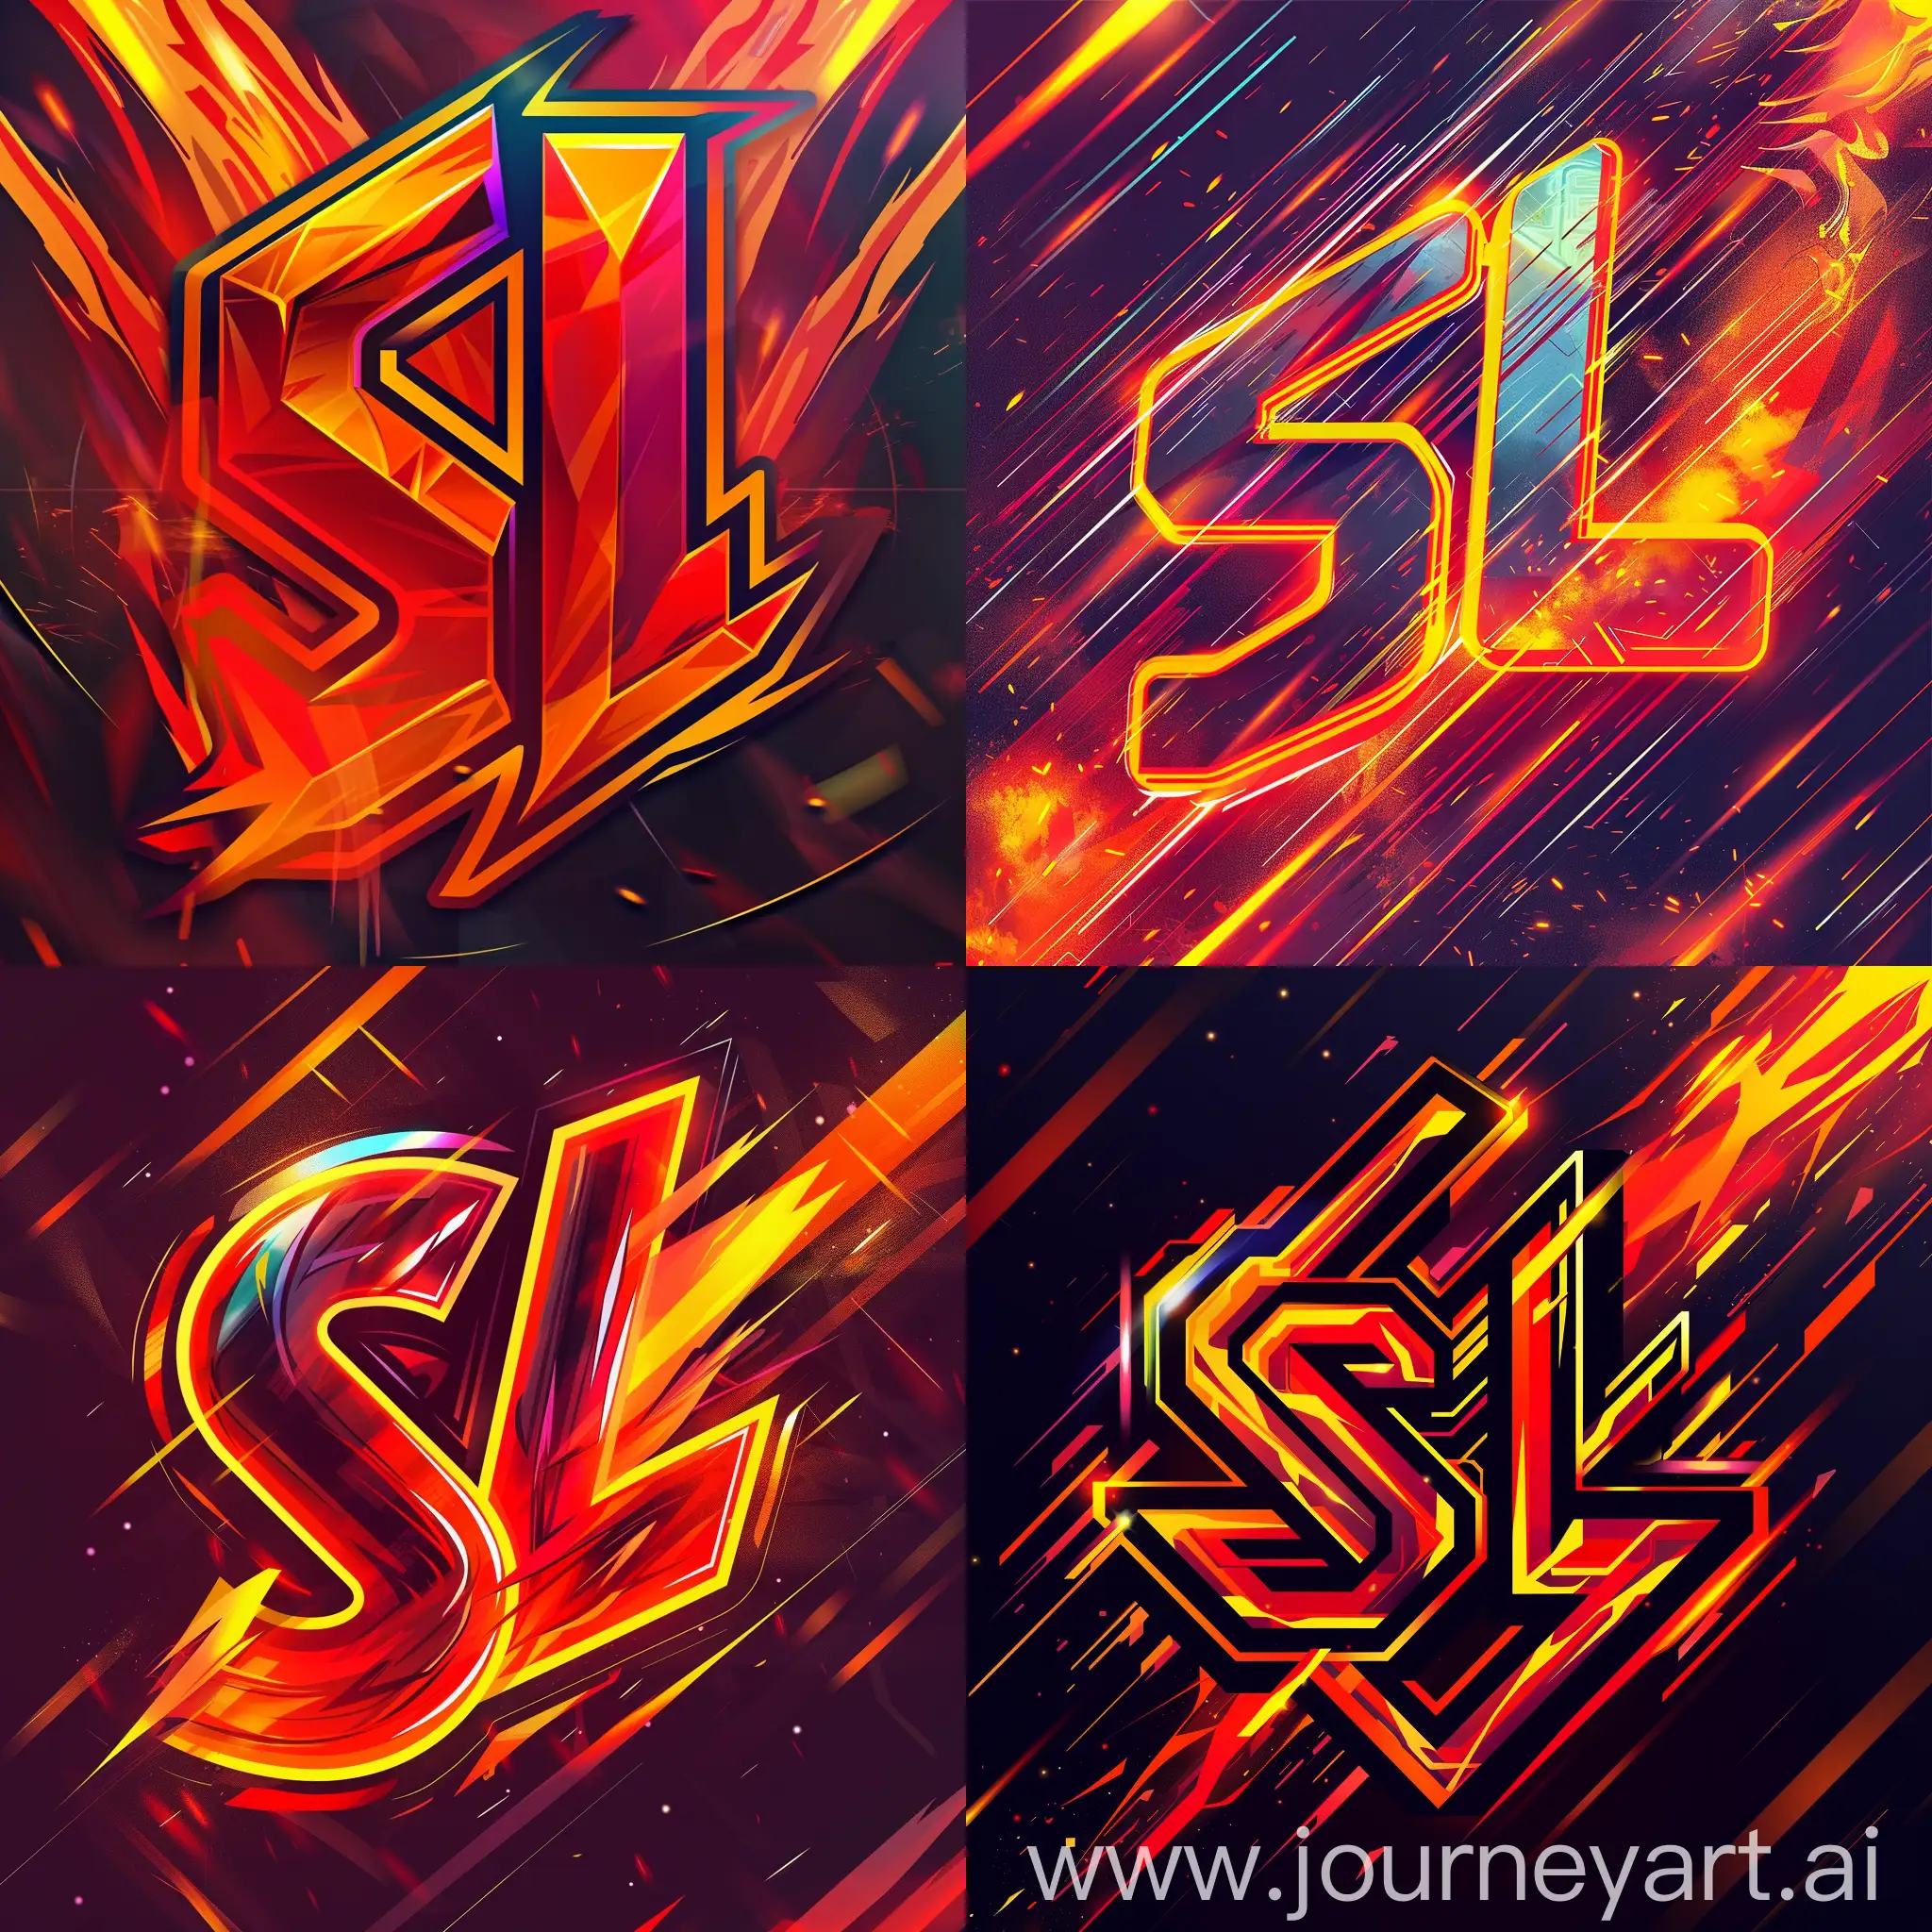 Логотип "SL" может быть выполнен в ярких и энергичных цветах, таких как красный, абстрактные формы логотипа, оранжевый и жёлтый, чтобы вызвать чувство адреналина и азарта. Буквы "SL" можно стилизовать в виде абстрактных форм или неоновых линий, символизирующих динамичность и движение. Фон логотипа можно украсить контрастными цветами или градиентами, чтобы создать эффект огня или взрыва, подчеркивая напряженность и волнение киберспортивных событий. Размытые эффекты и игра света также могут добавить динамизма и драматического настроения логотипу.